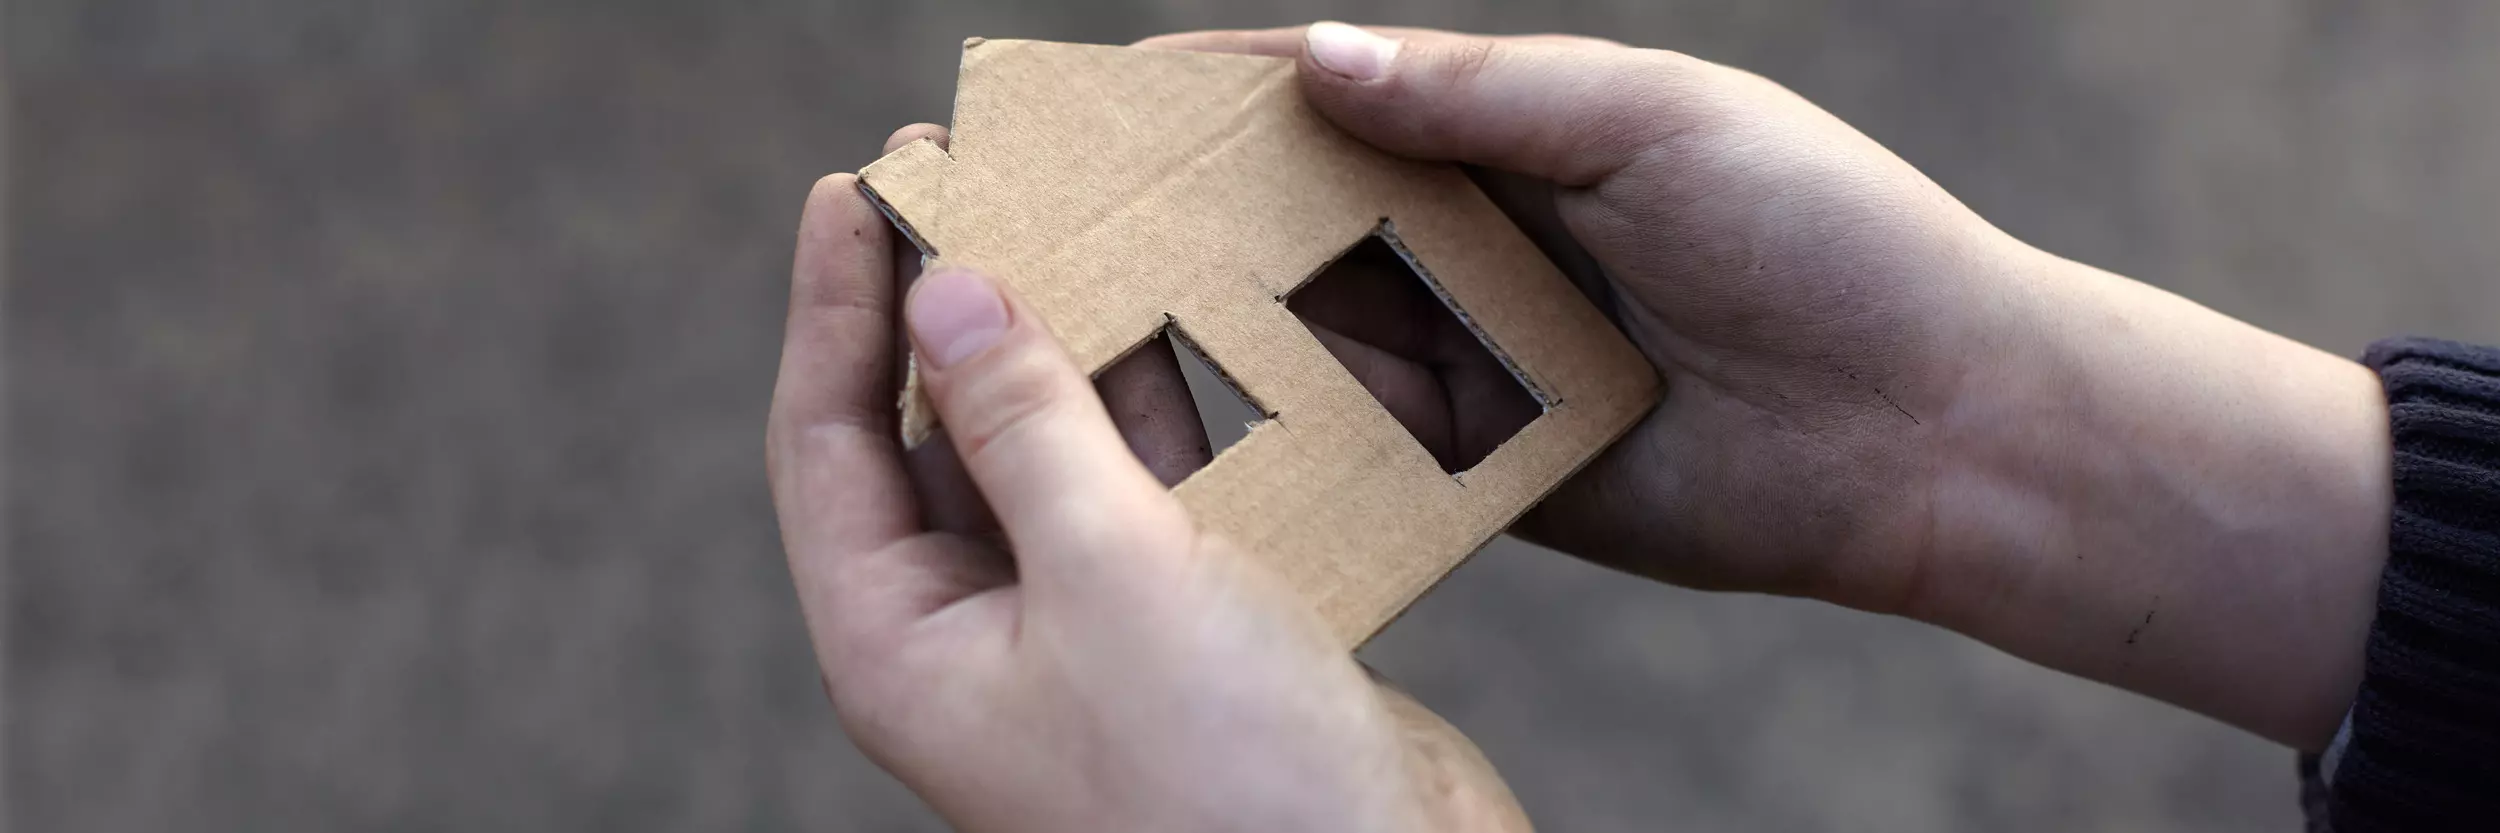 Eine Hand hält ein Haus aus Karton was symbolisch für ein Kinderheim steht.